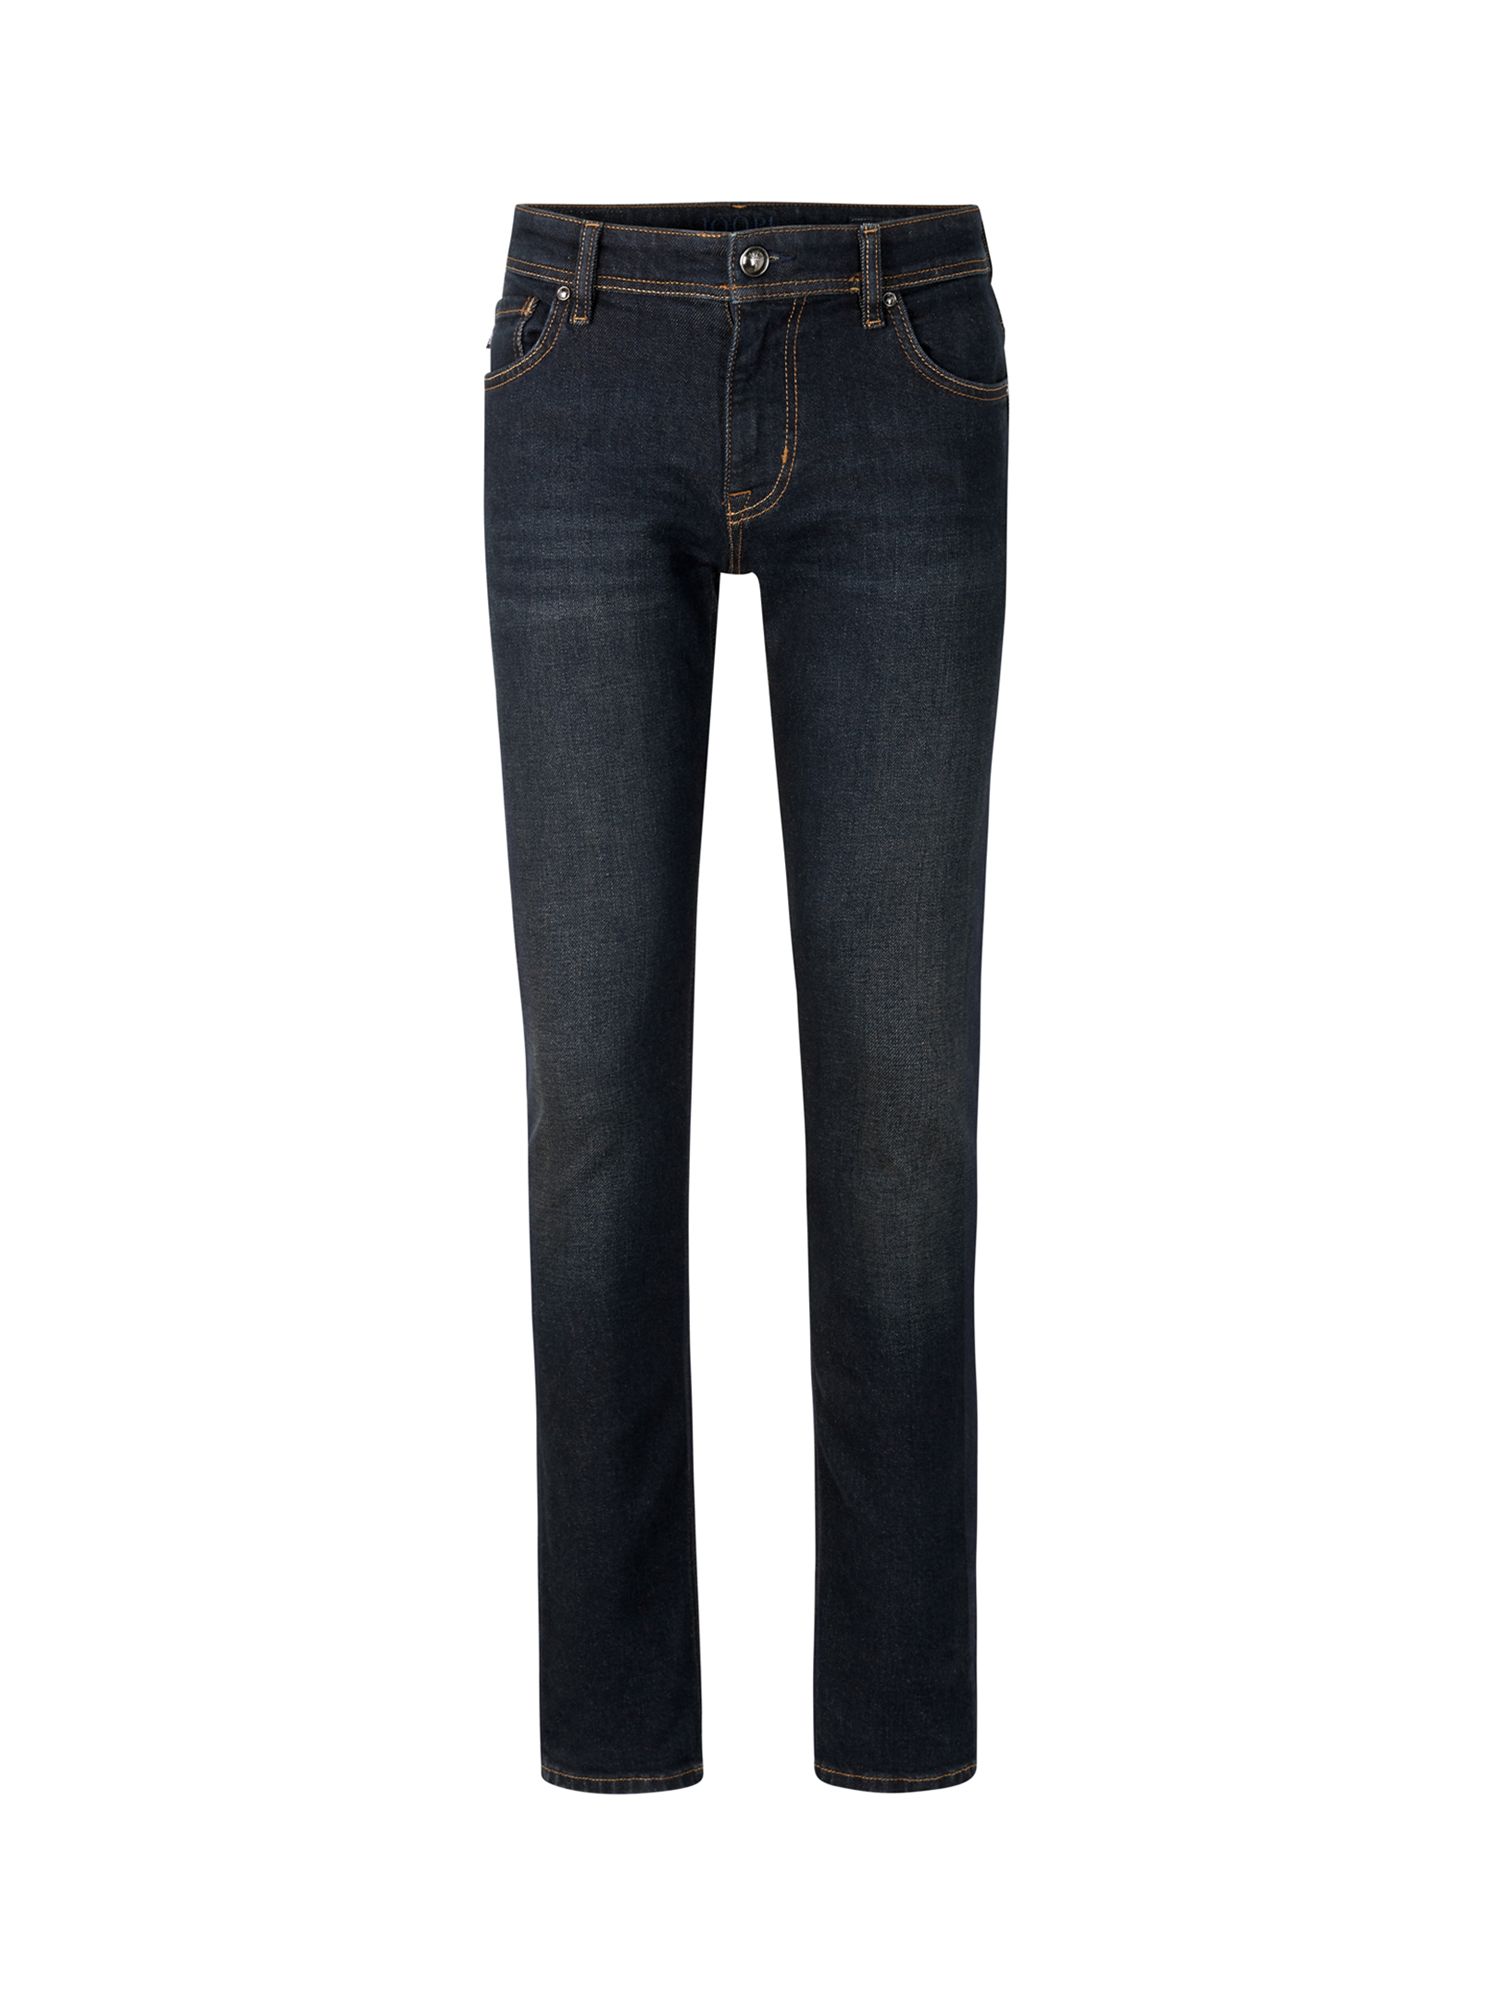 Buy JOOP! Hamond Slim Fit Jeans Online at johnlewis.com